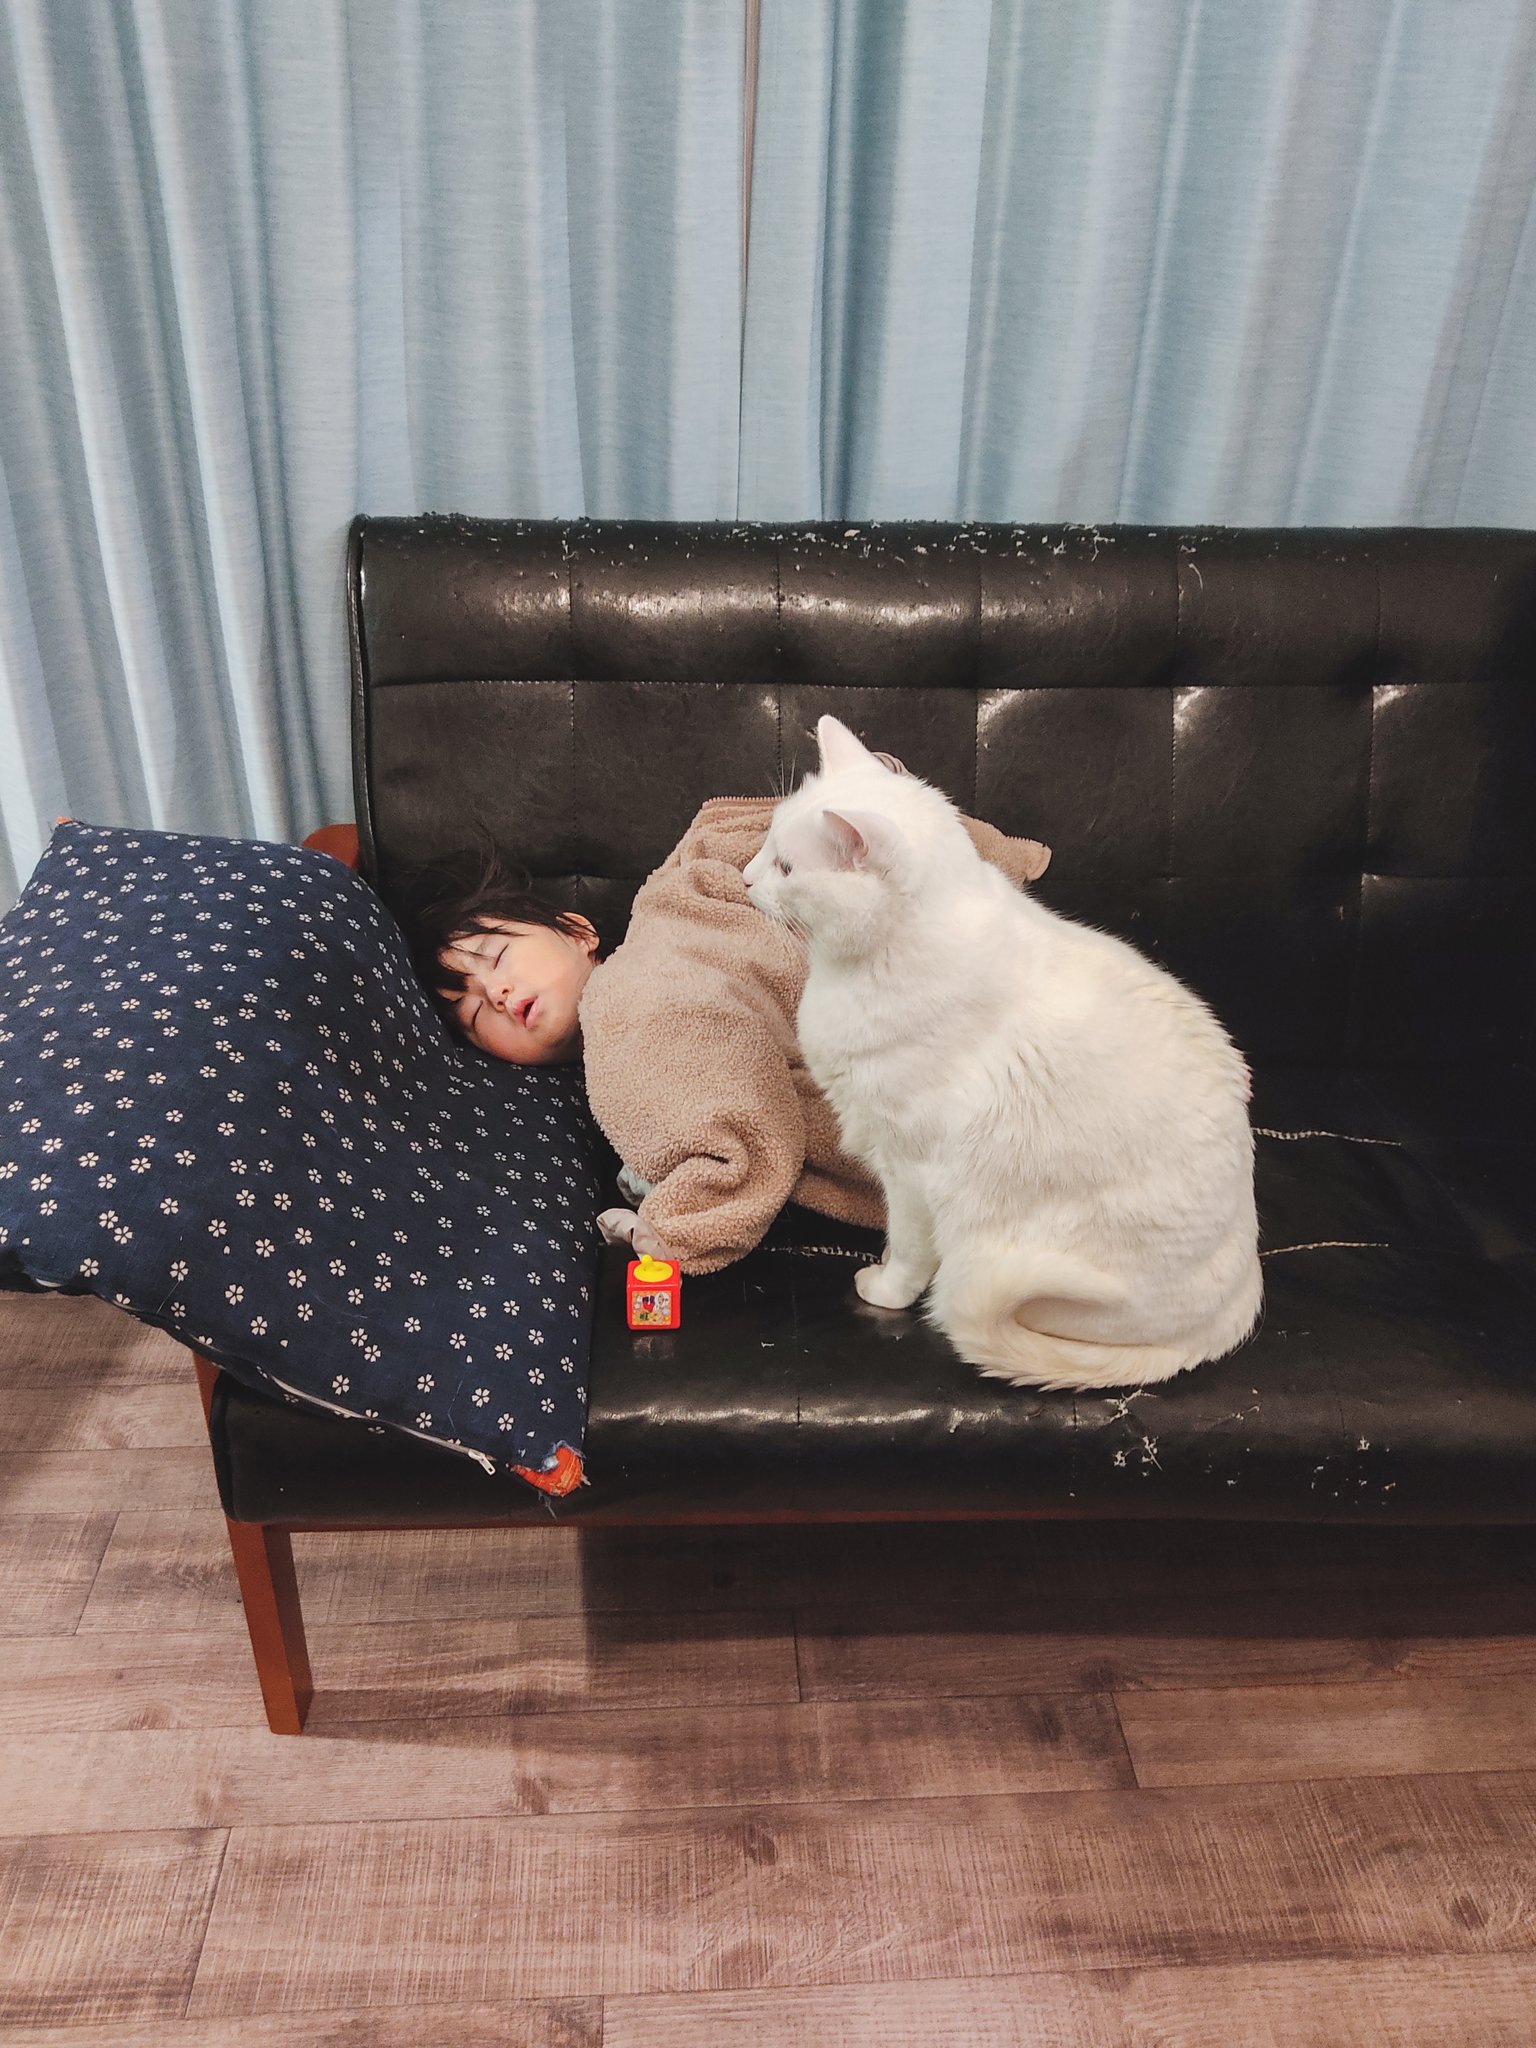 化身為護欄～　白貓見小主人熟睡　默默到沙發邊緣守護：別跌下去囉